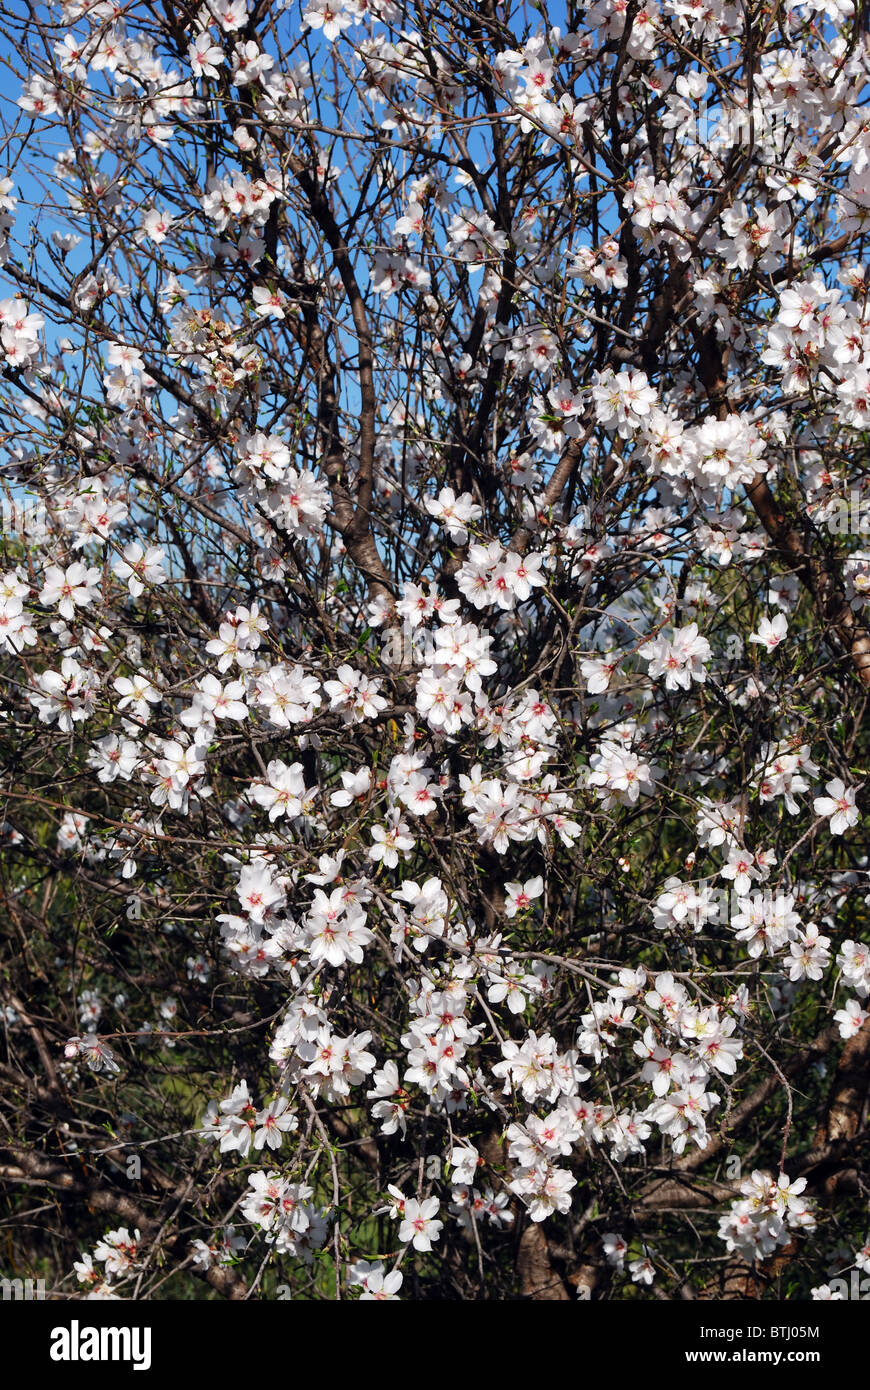 Almond blossom, Near Alhaurin el Grande, Mijas Costa, Costa del Sol, Malaga Province, Andalucia, Spain, Western Europe. Stock Photo